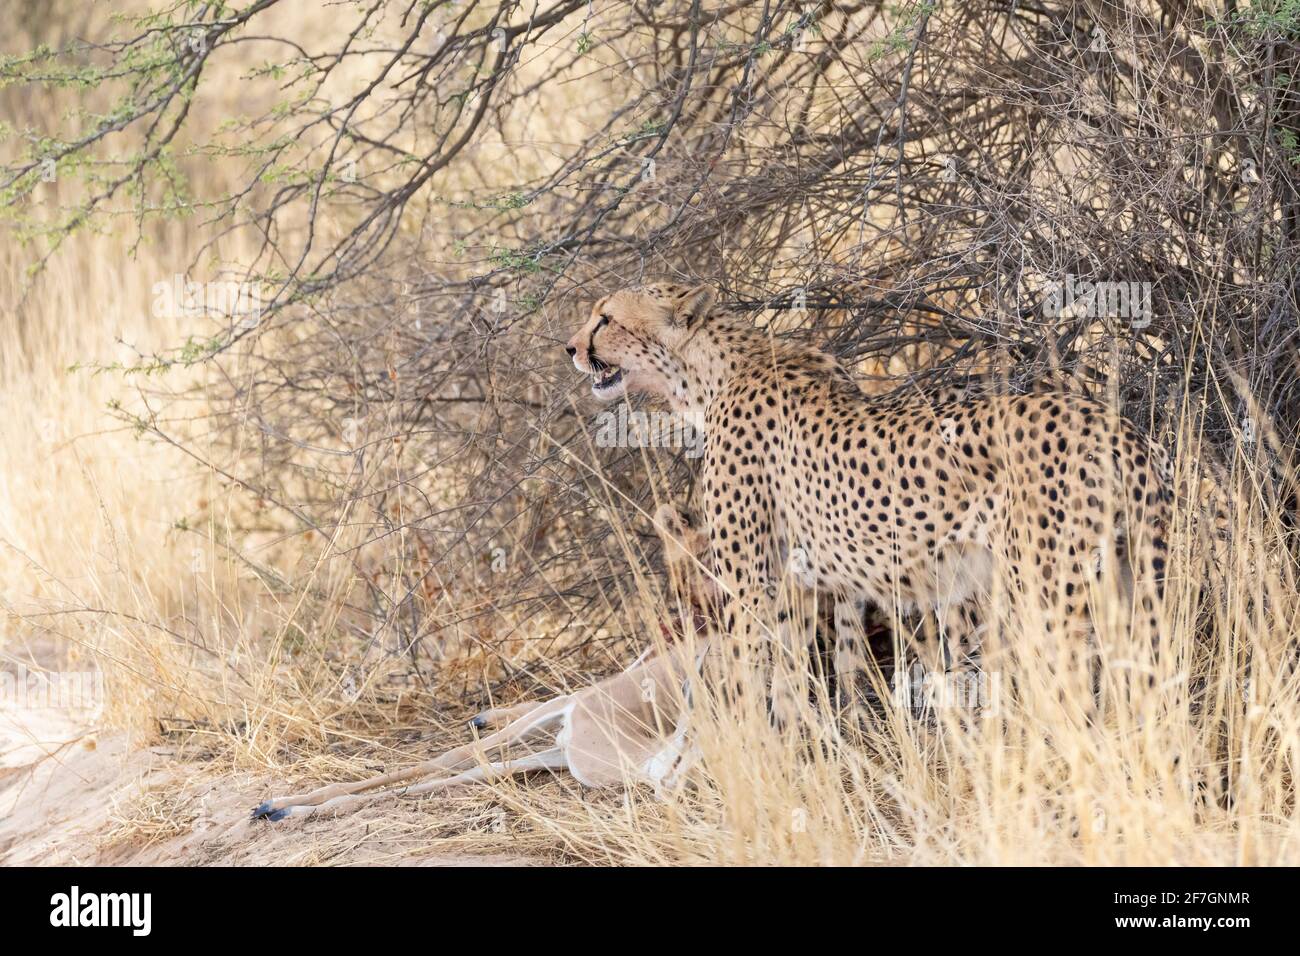 Cheetah (Acinonyx jubatus) femme tuée, Kalahari, Cap Nord, Afrique du Sud, Cheetah africain sont classées comme vulnérables sur la liste rouge de l'UICN Banque D'Images